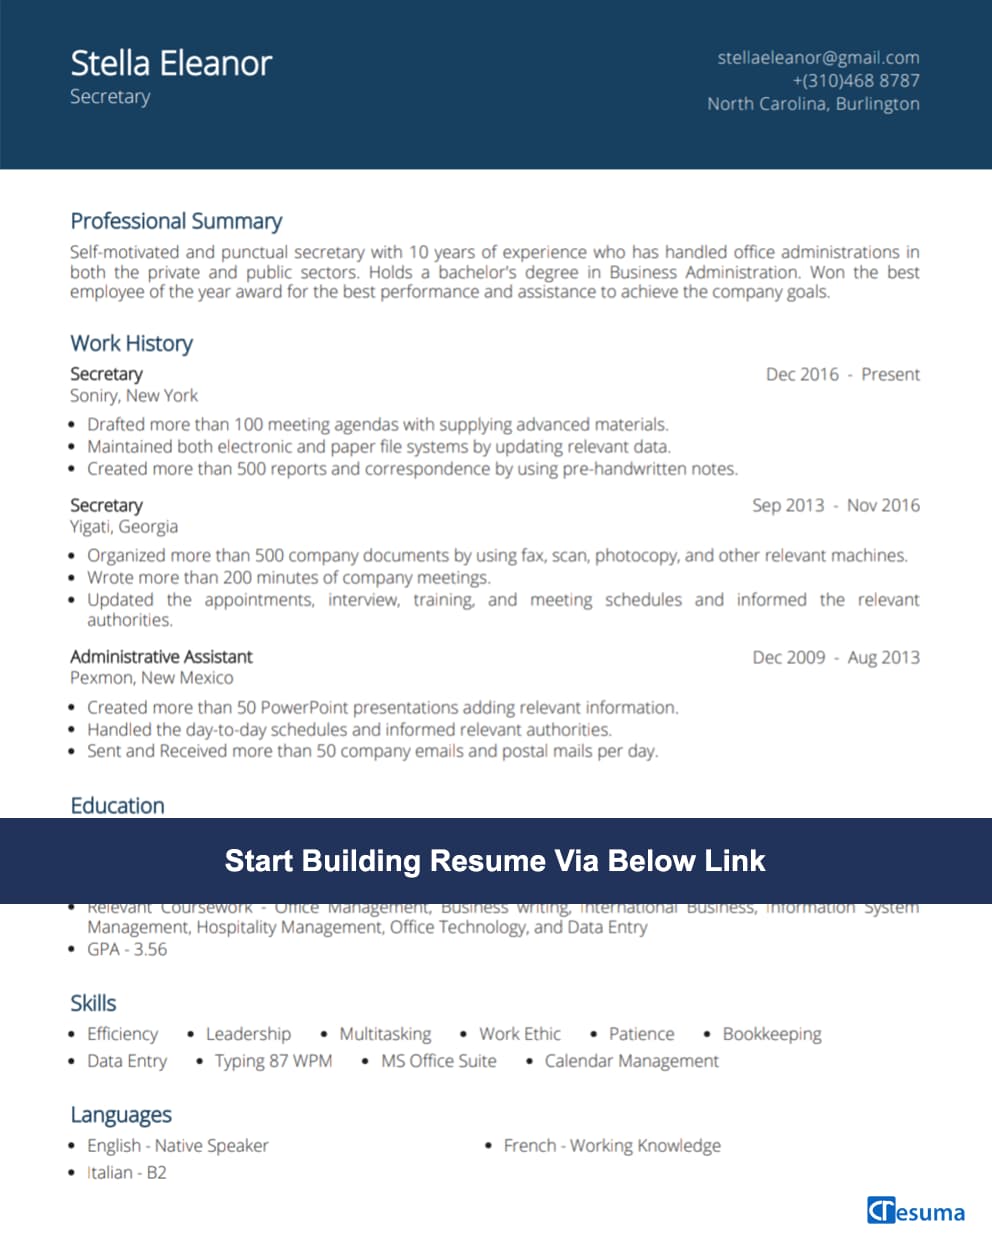 Secretary Resume Example image - Cresuma